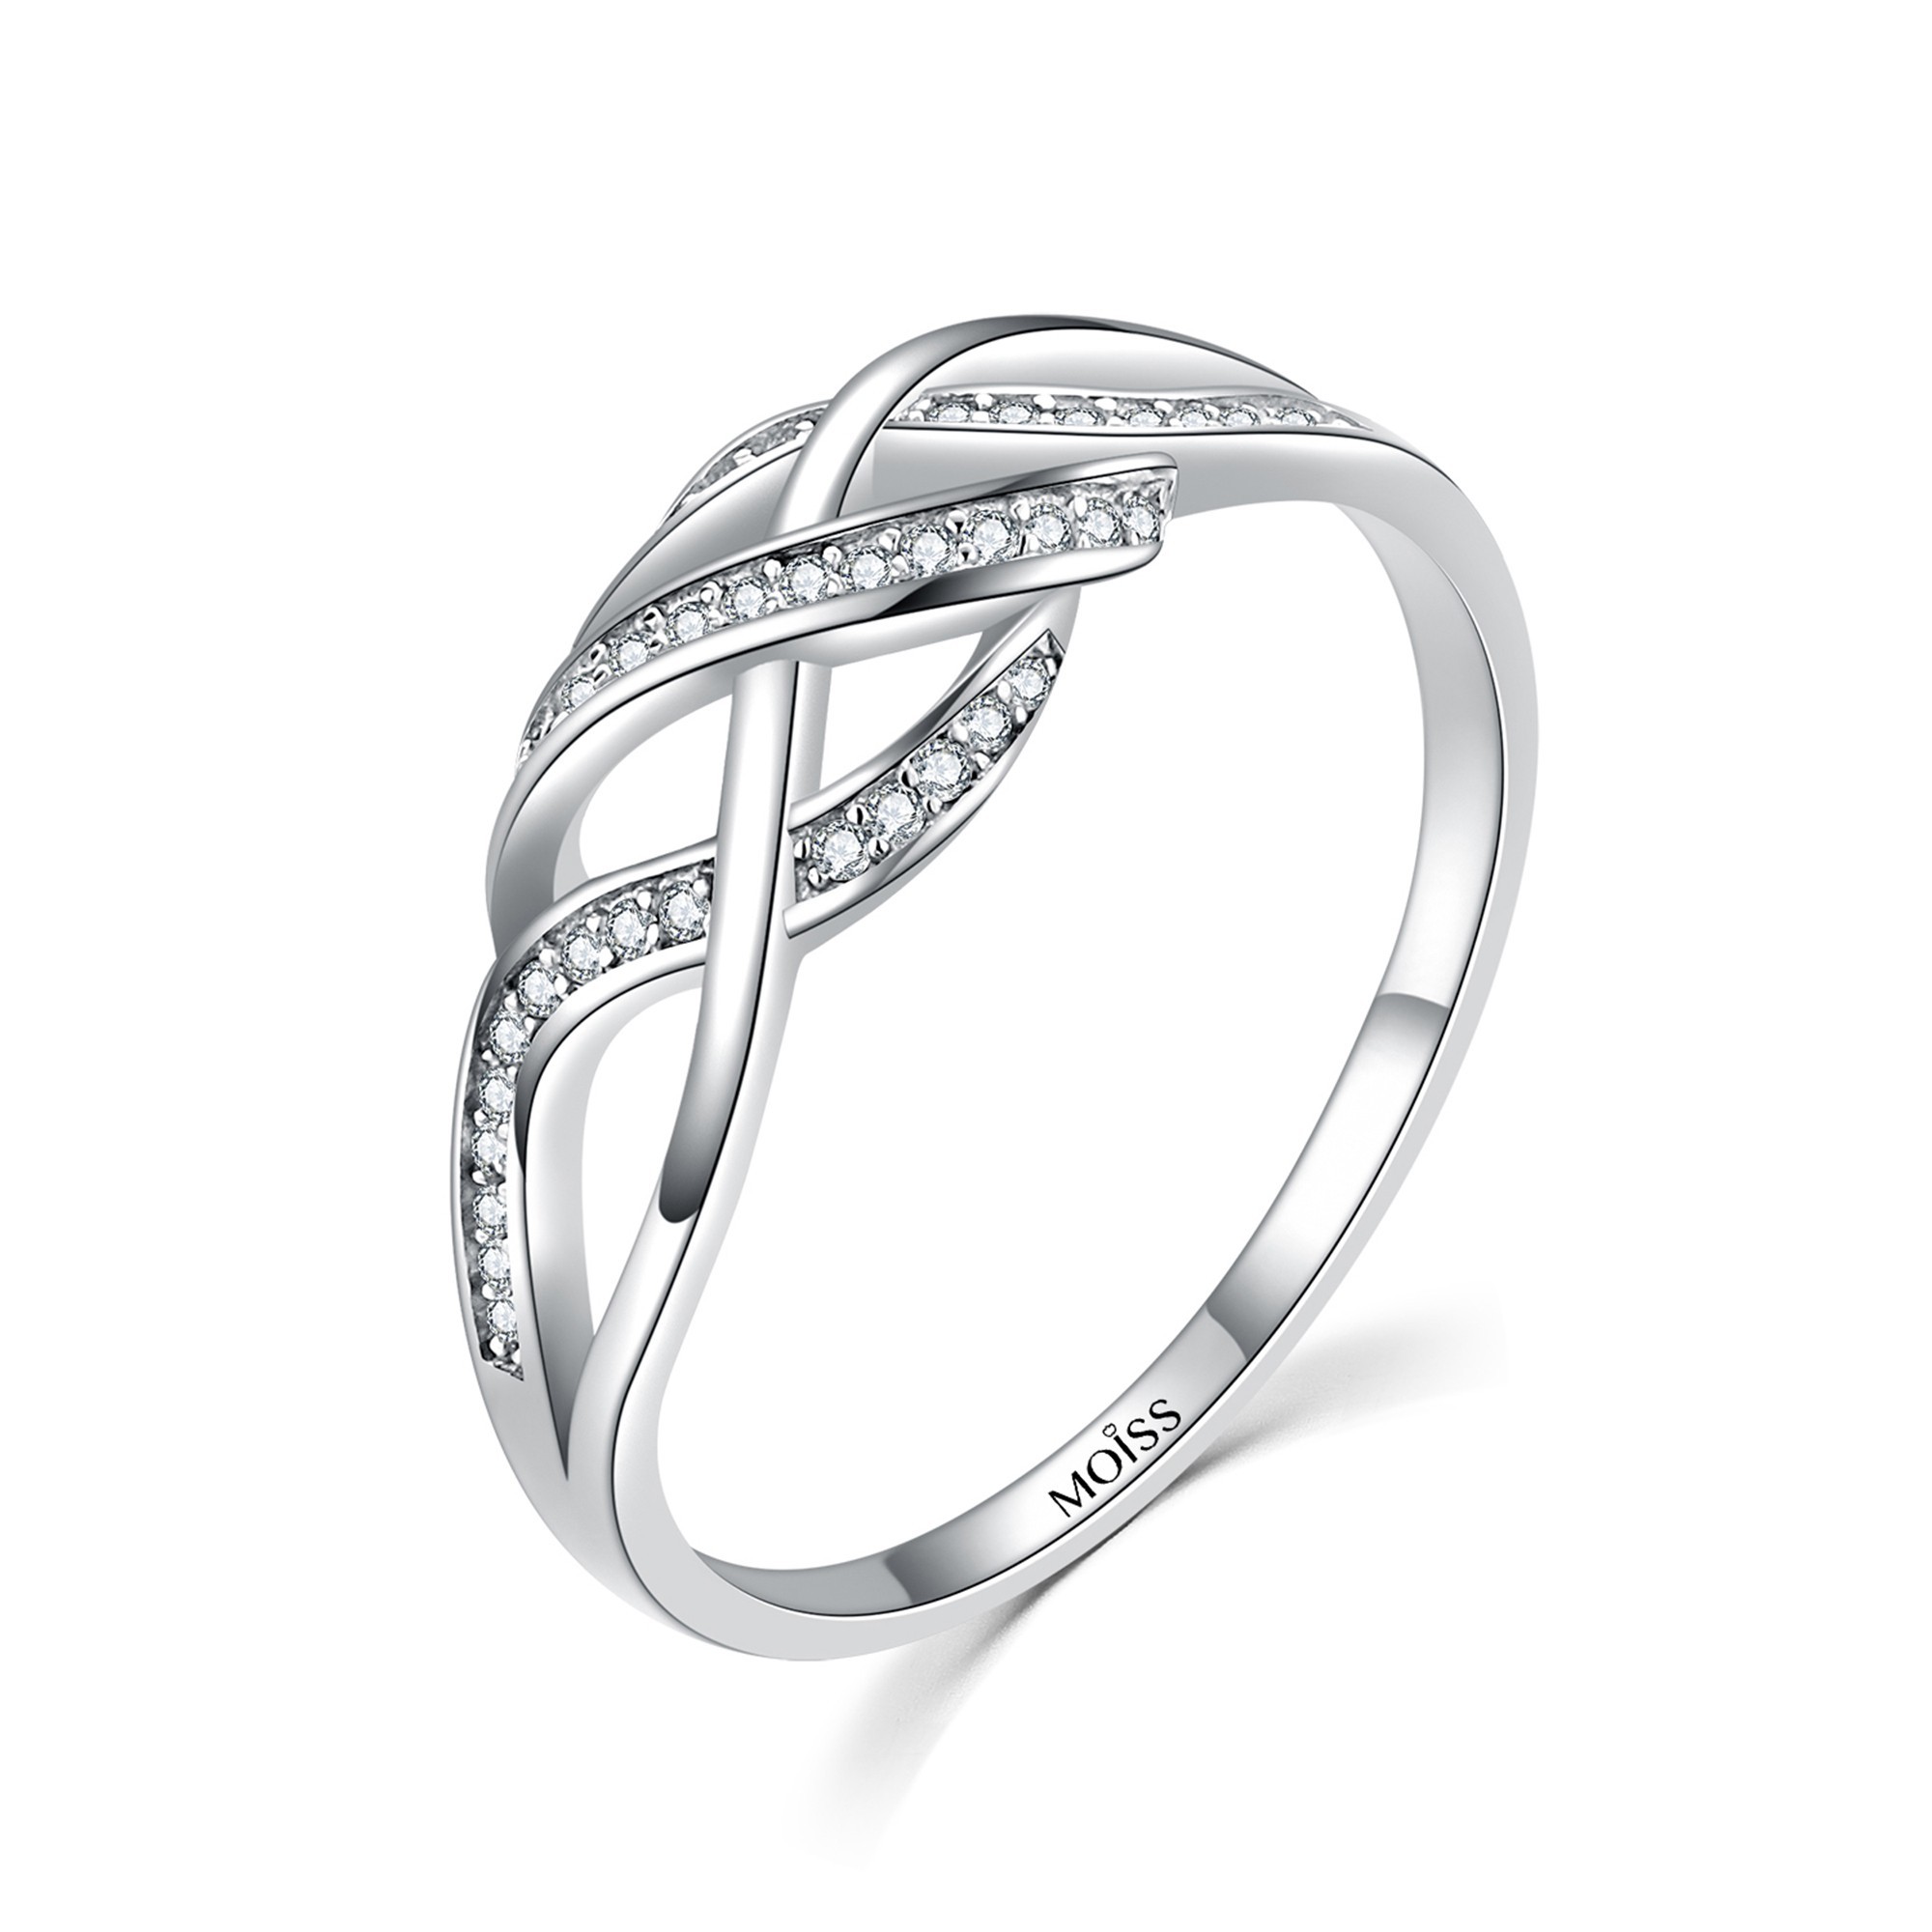 MOISS Moiss stříbrný prsten s bílými zirkony HEIKE R0000804 Velikost 54 mm R0000804